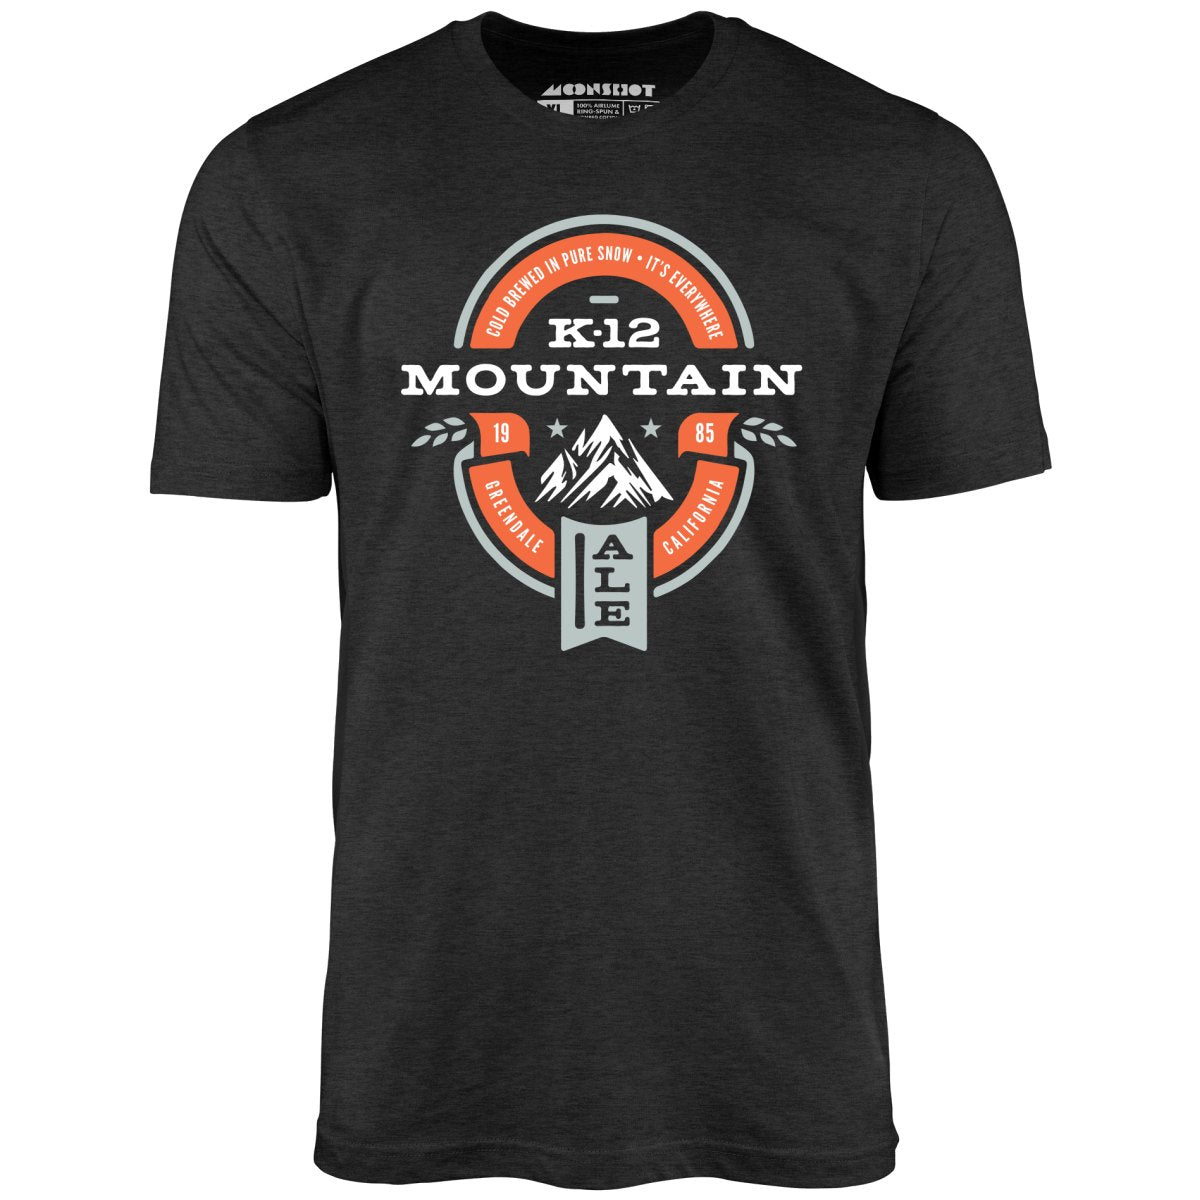 K-12 Mountain Ale - Unisex T-Shirt